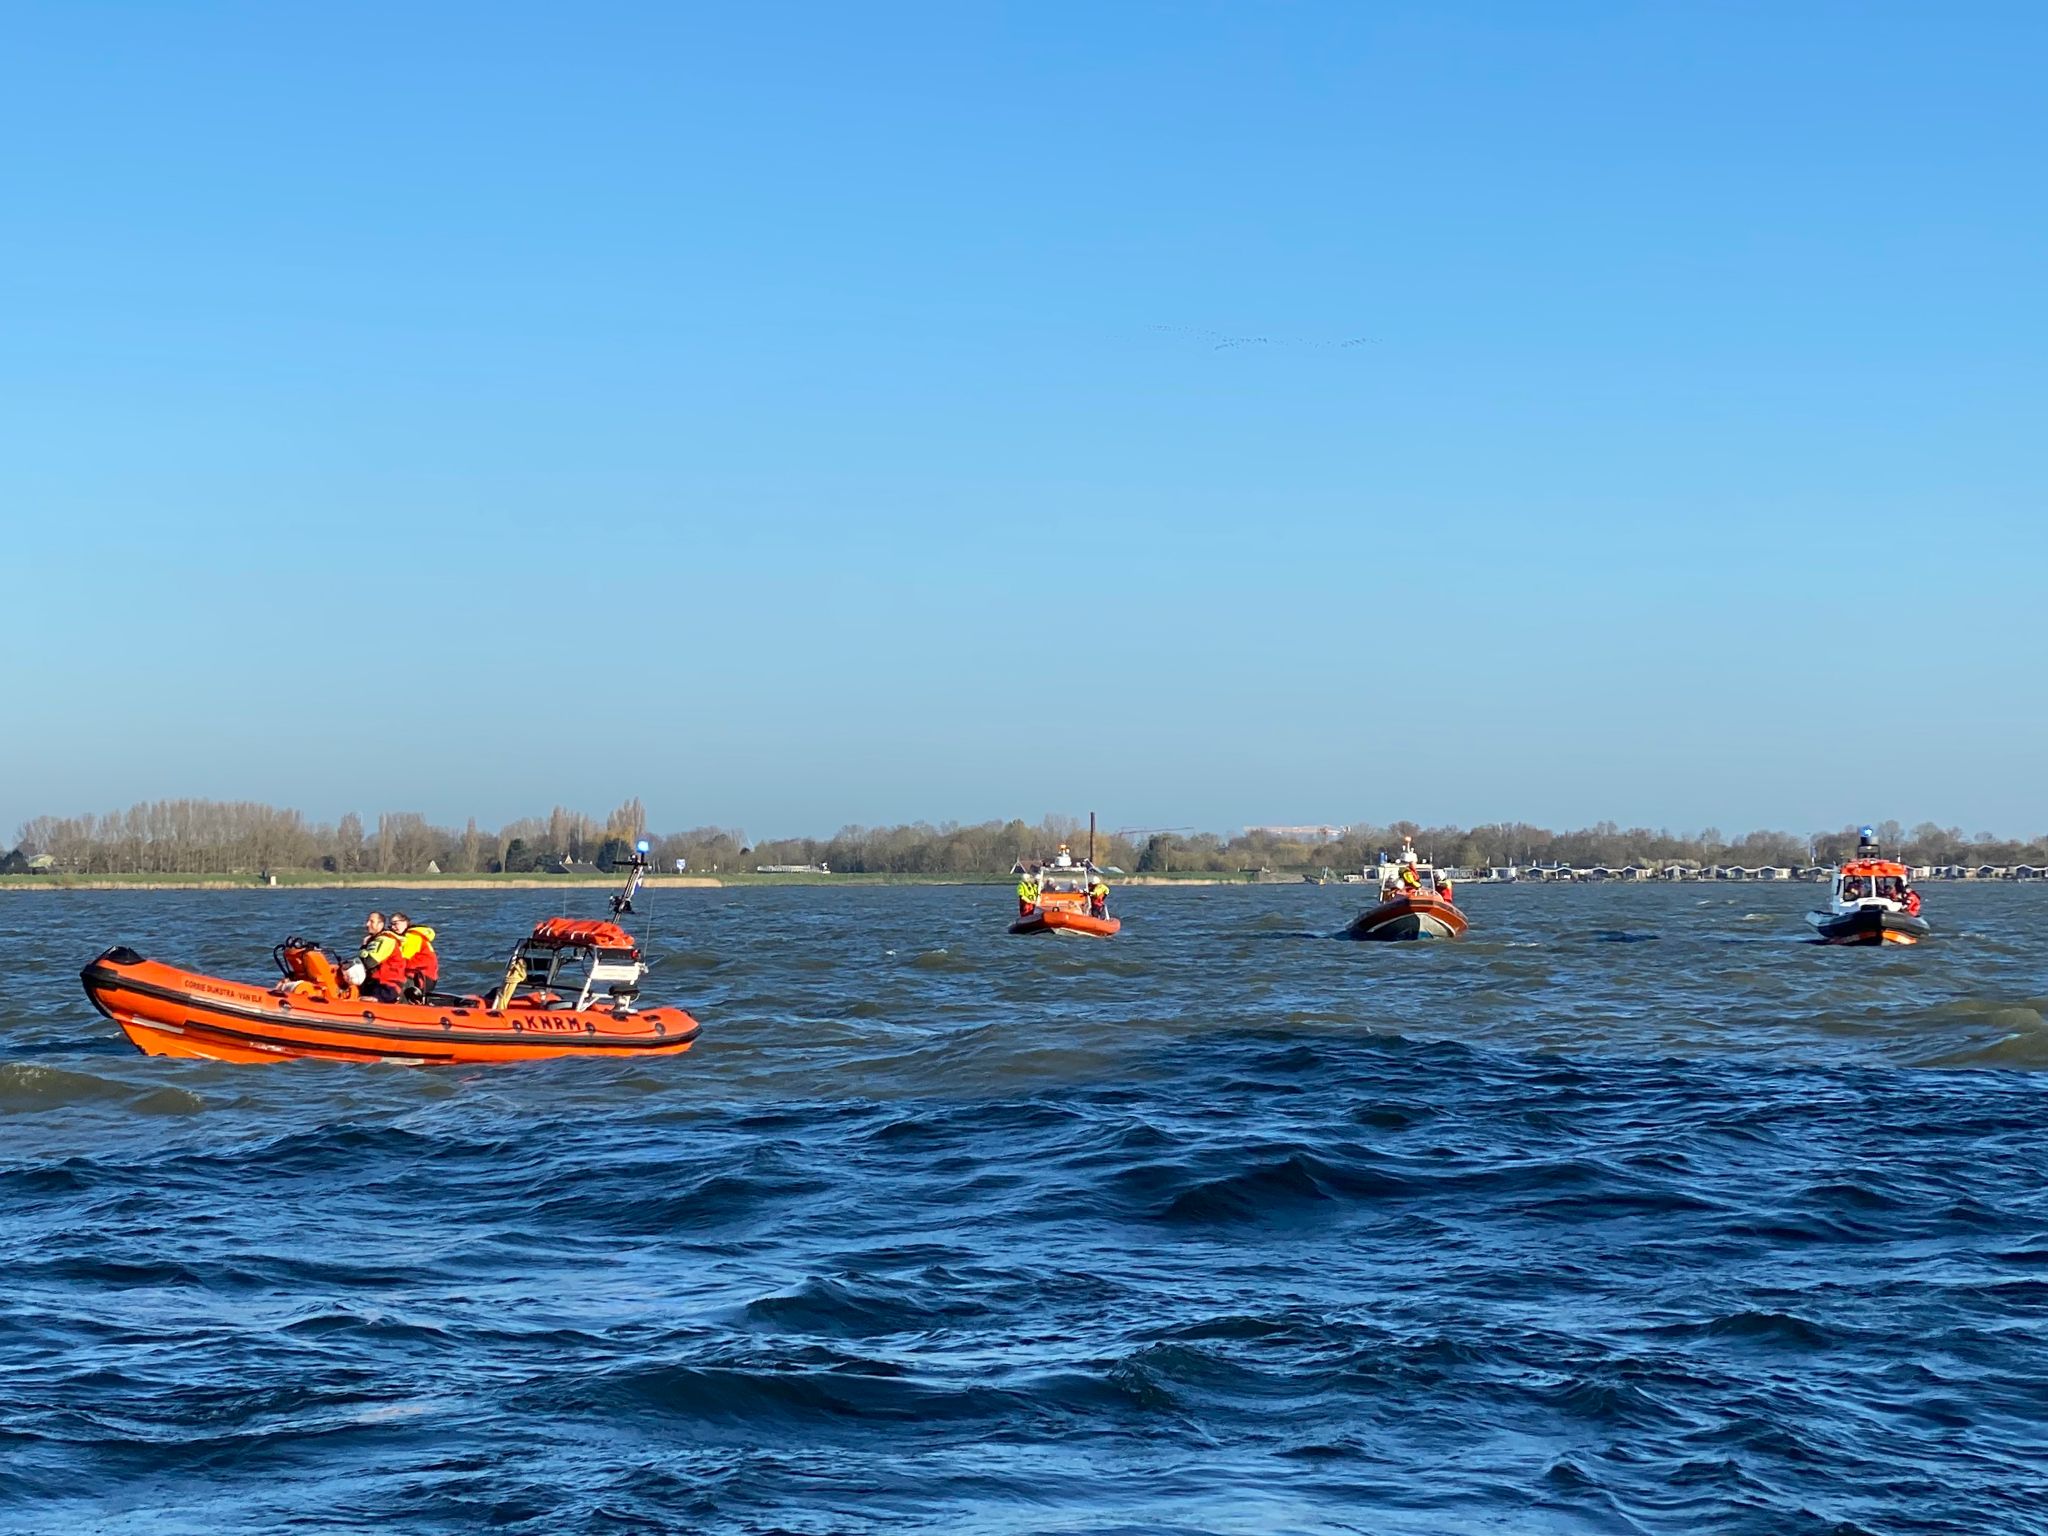 Evacuatie na brand aan boord van passagierschip op het Markermeer